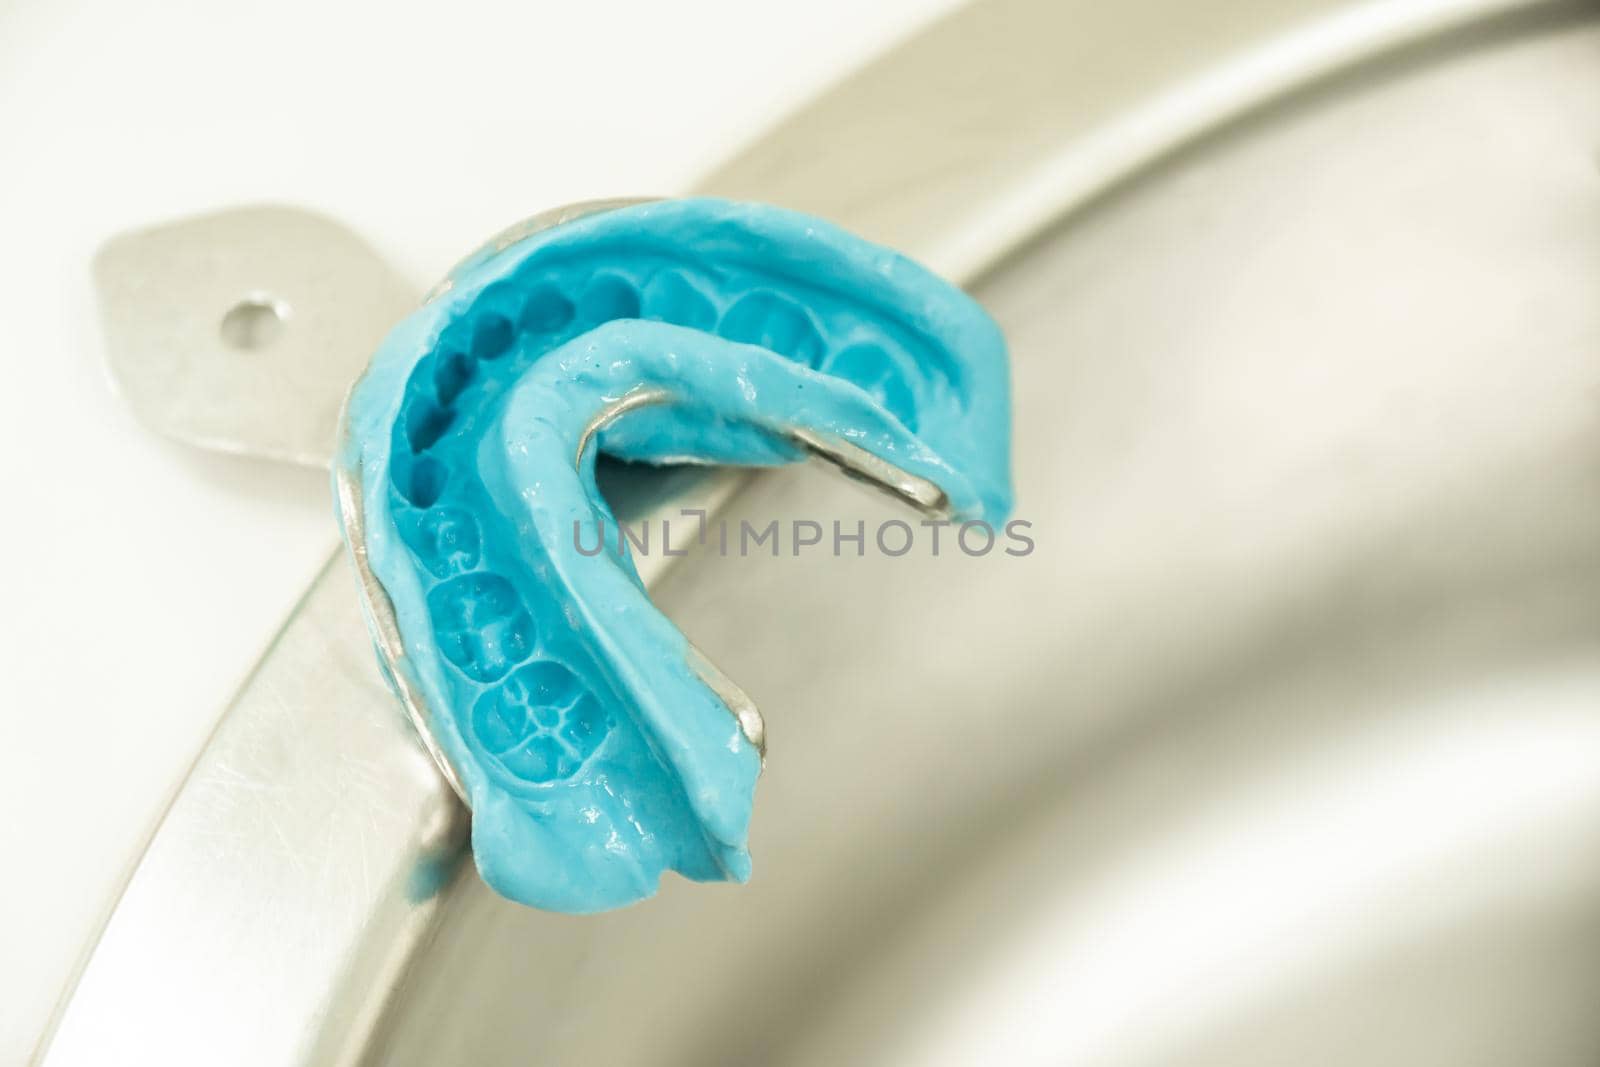 metal blue alginate dental impression mold